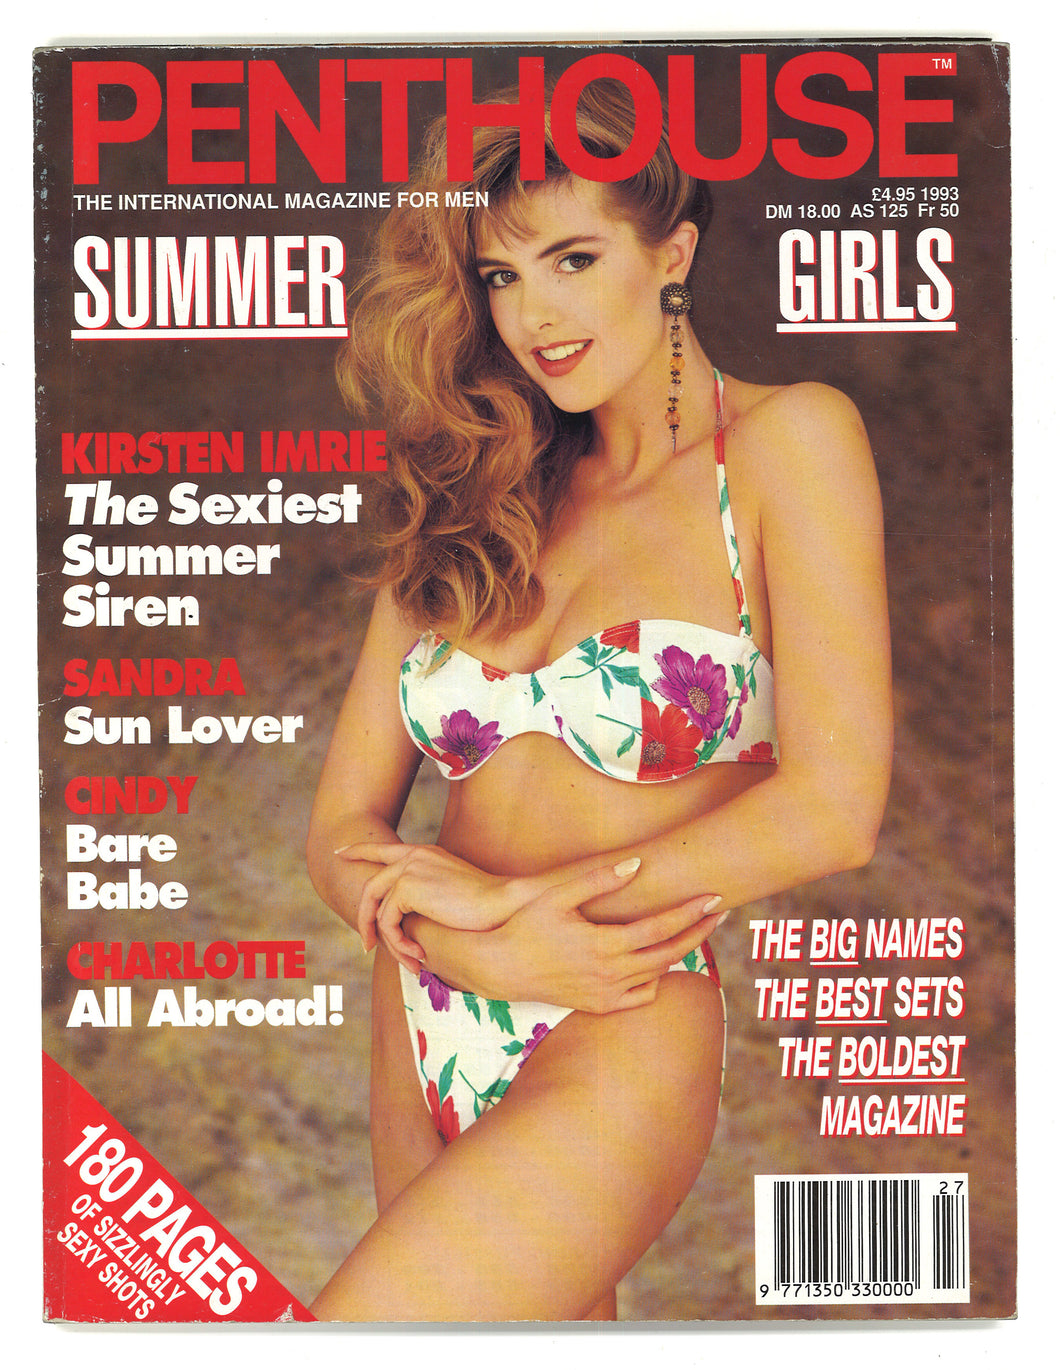 Penthouse Summer Girls 1993